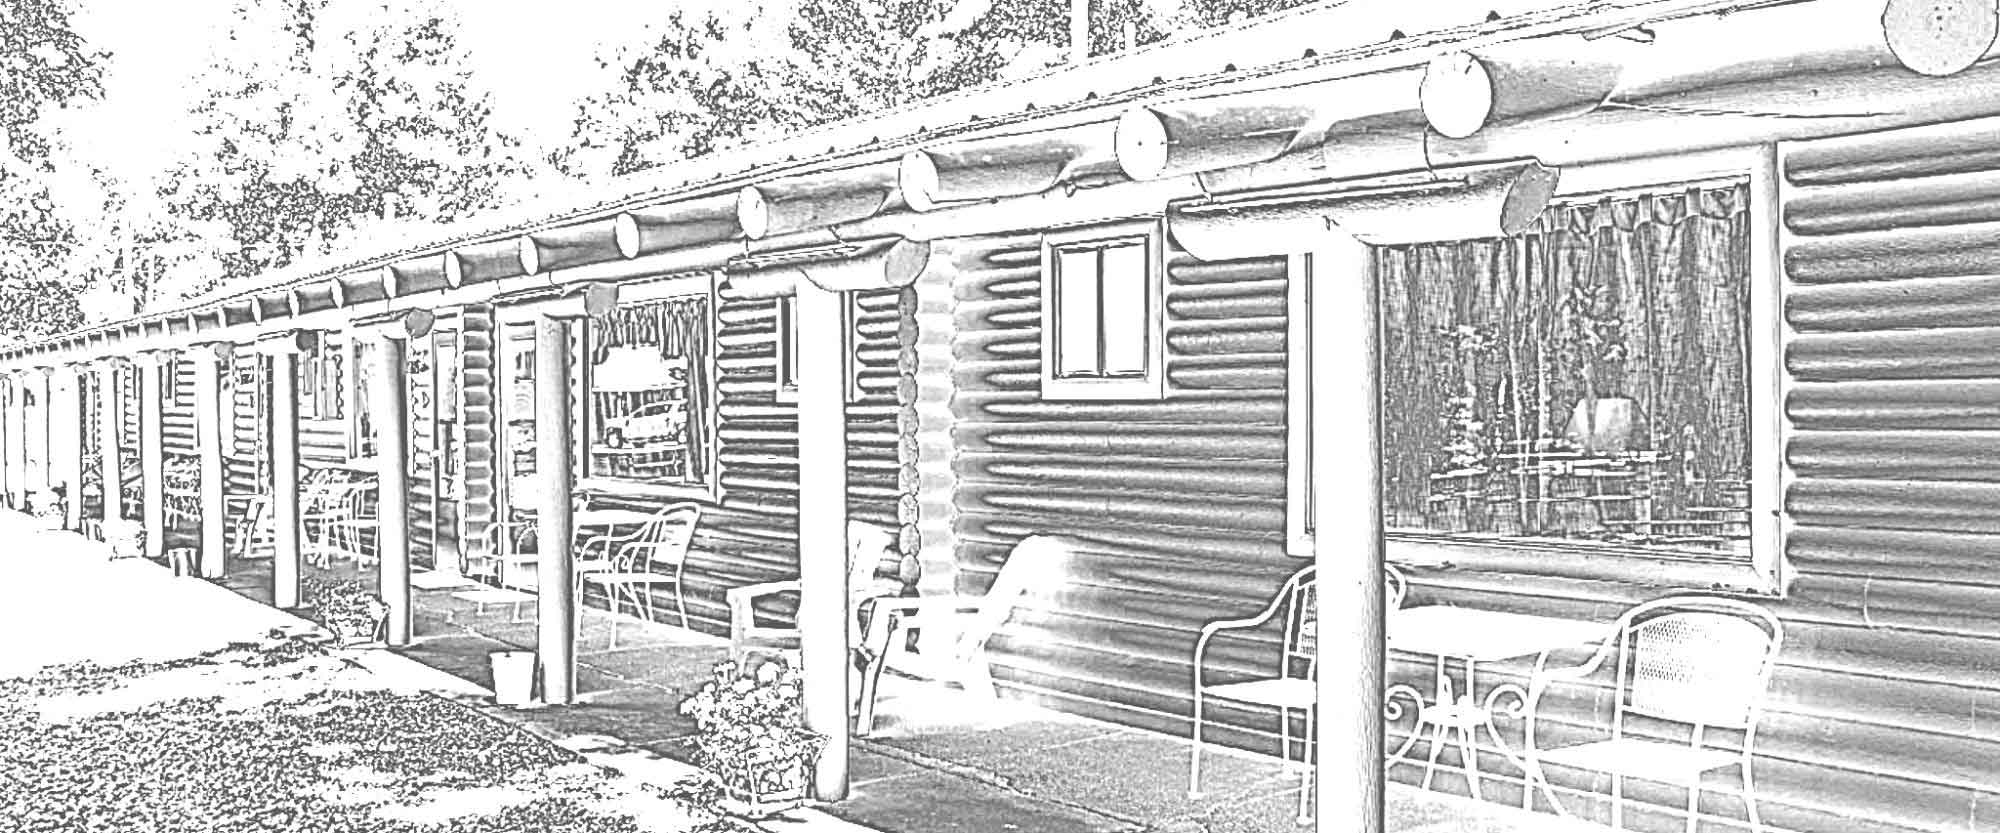 Pencil Sketch of Island Acres Resort Motel Loclog Building